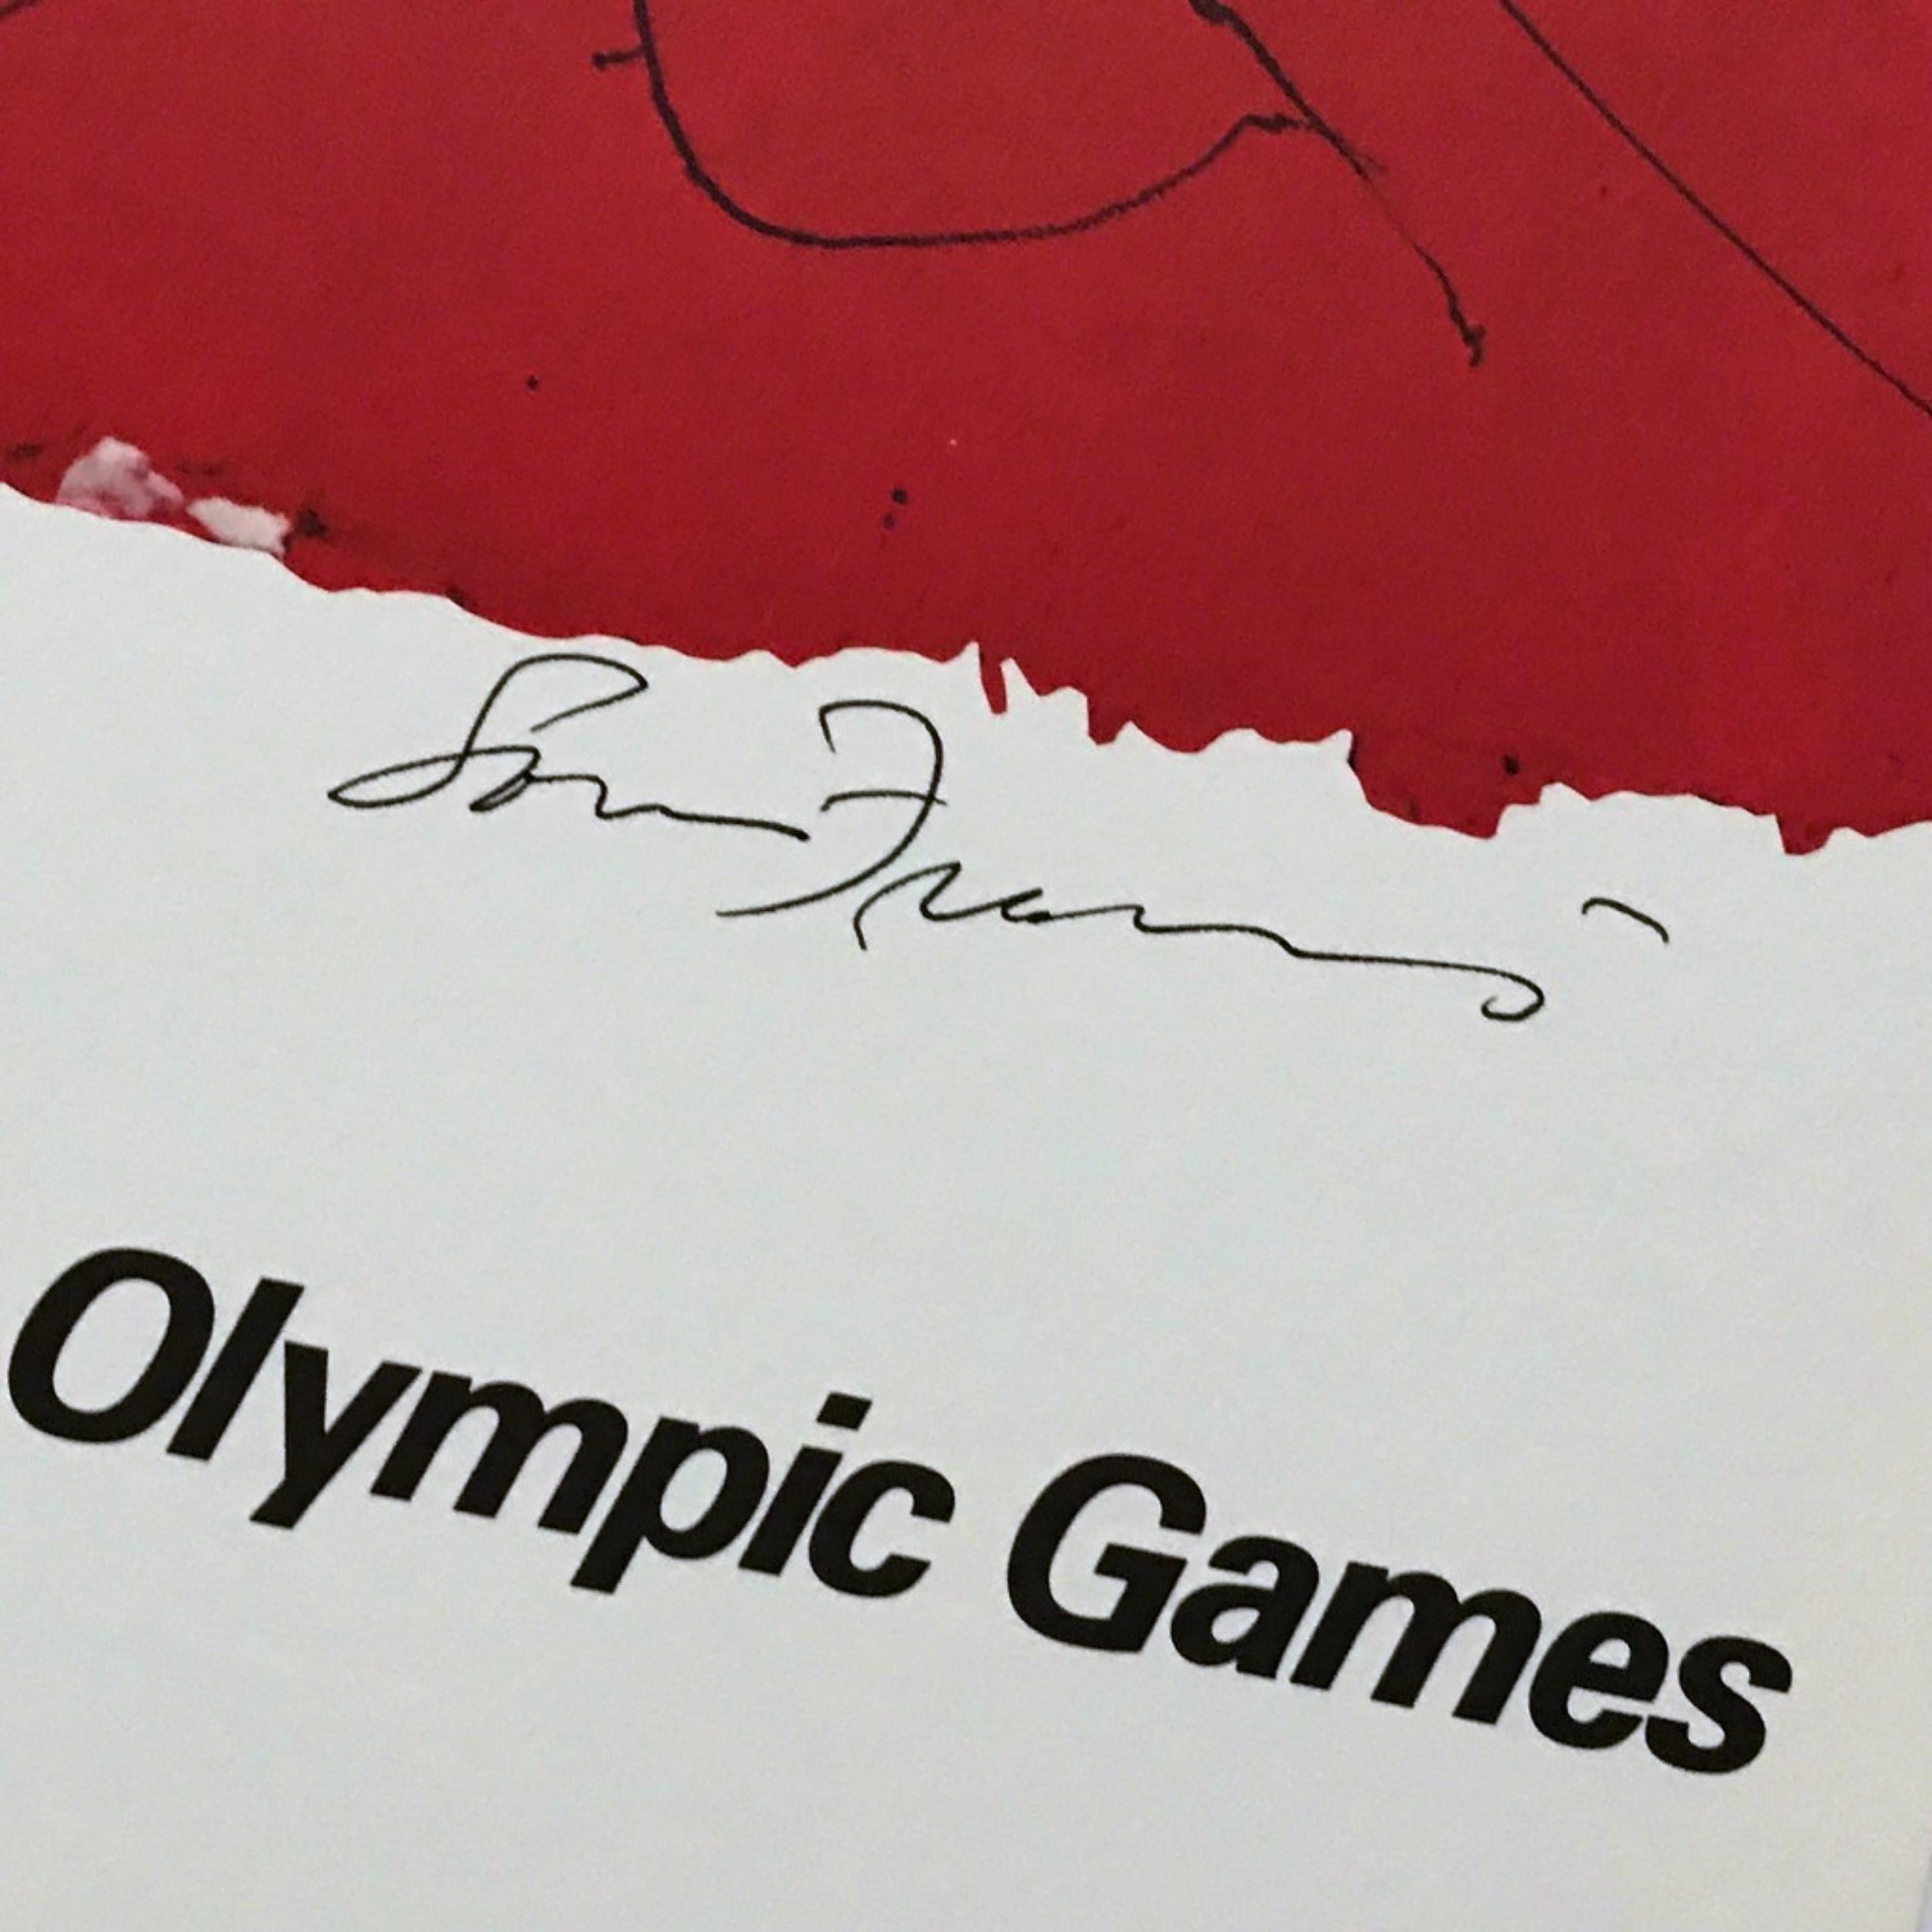 Lt Ed. Lithographie tirée du portfolio de luxe (signé à la main) du Comité olympique de 1984 - Print de Sam Francis